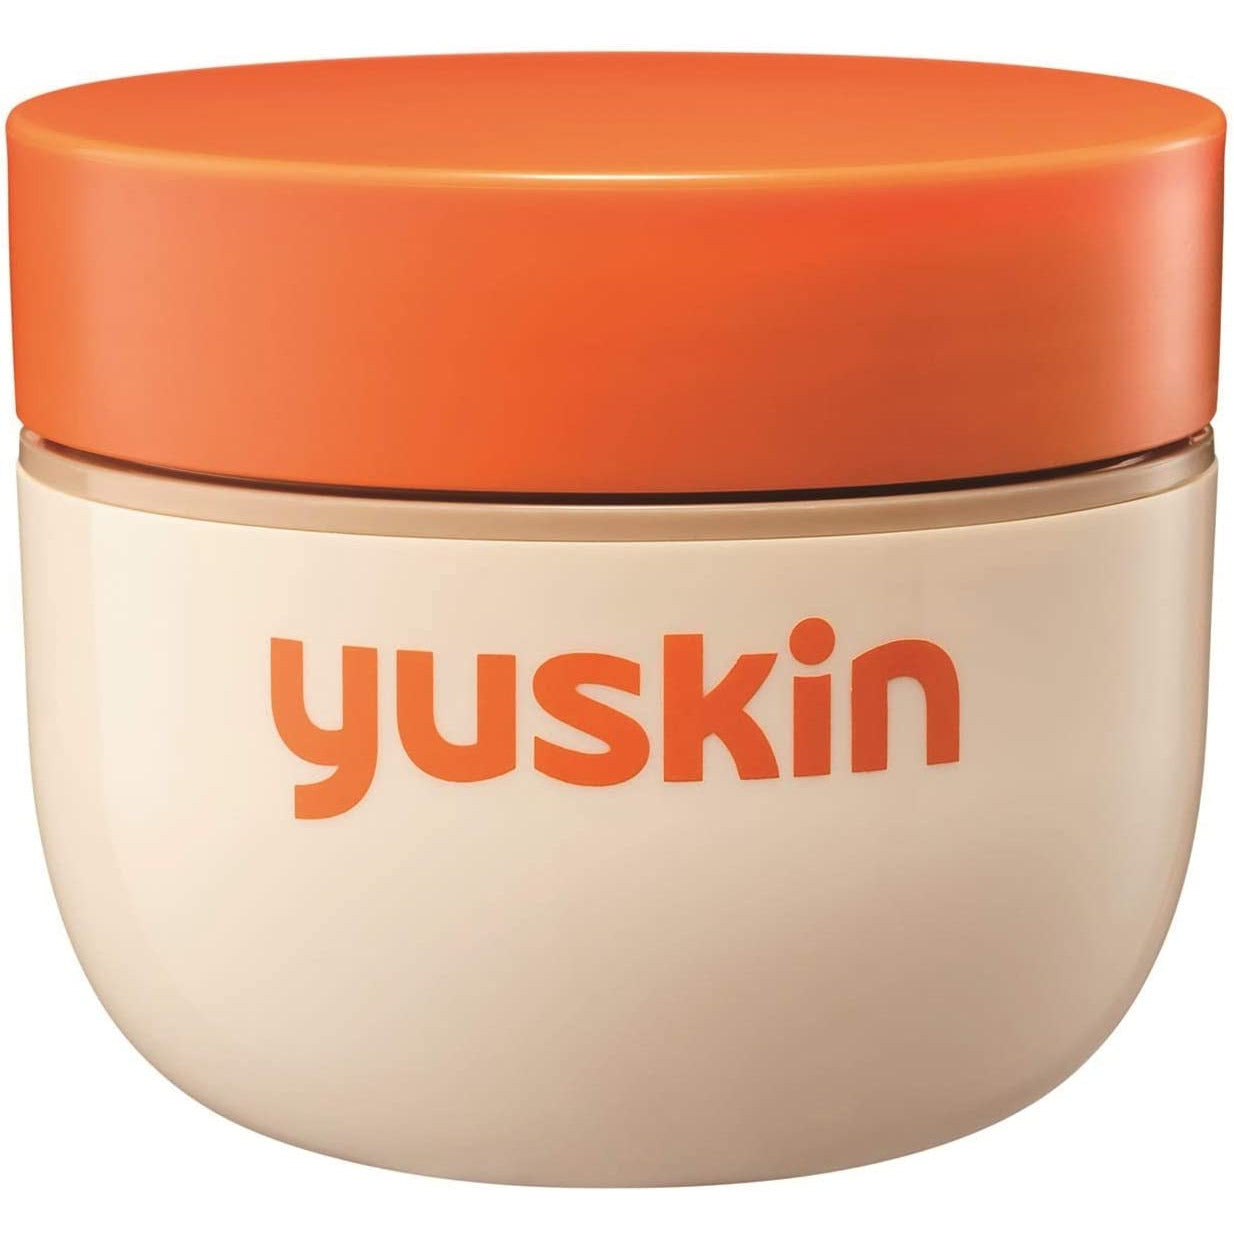 Yuskin 120g Bottle Body Cream (For crack, chapped, frostbite)